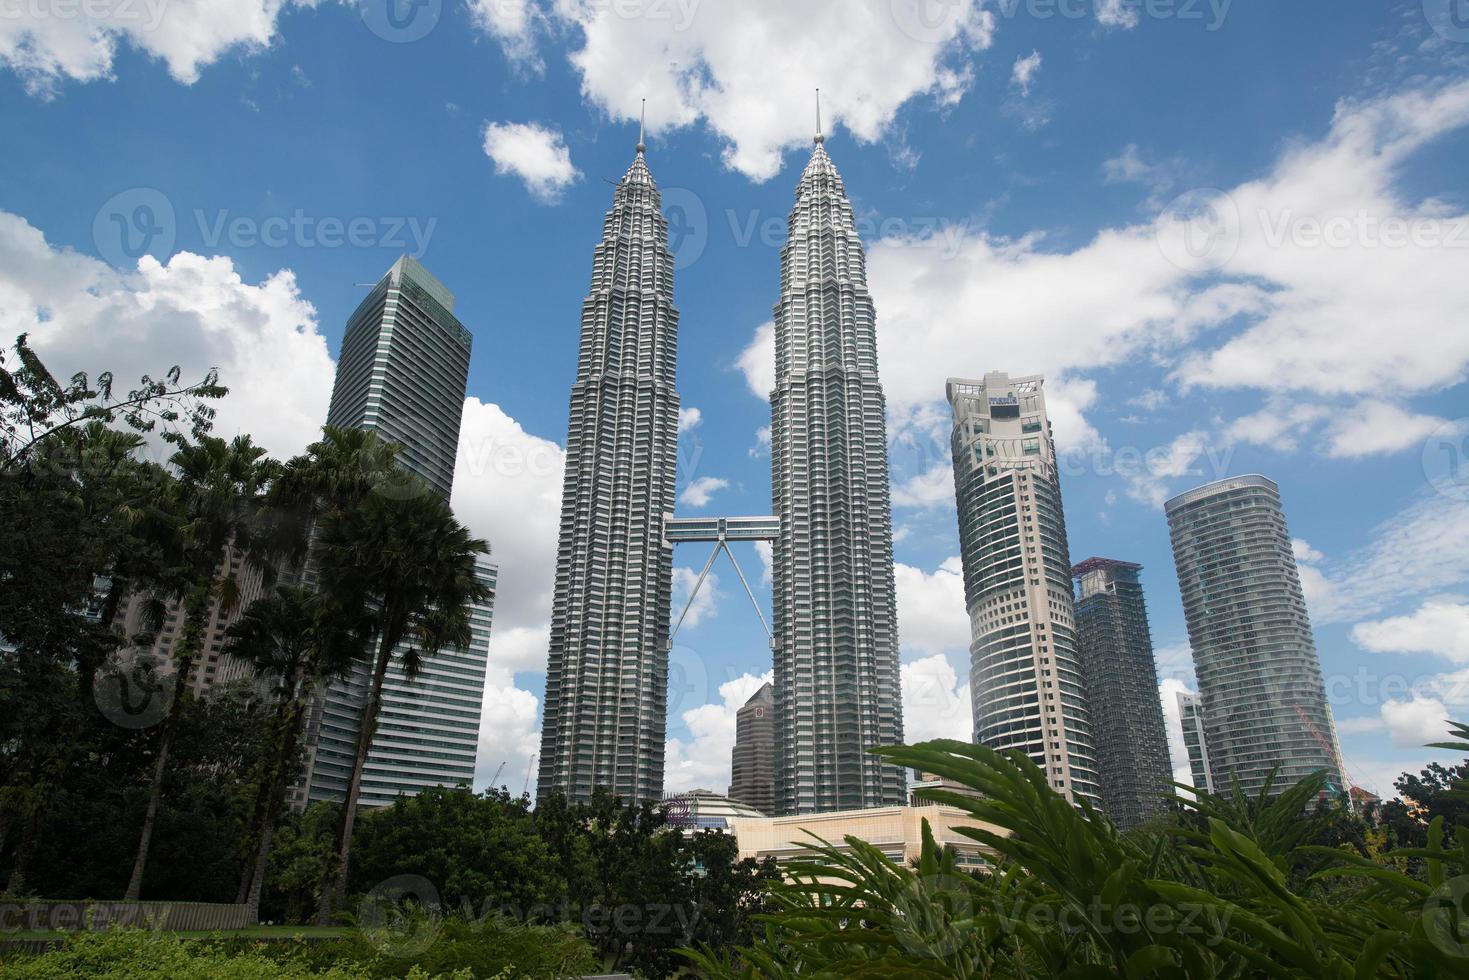 torres gemelas Petronas foto